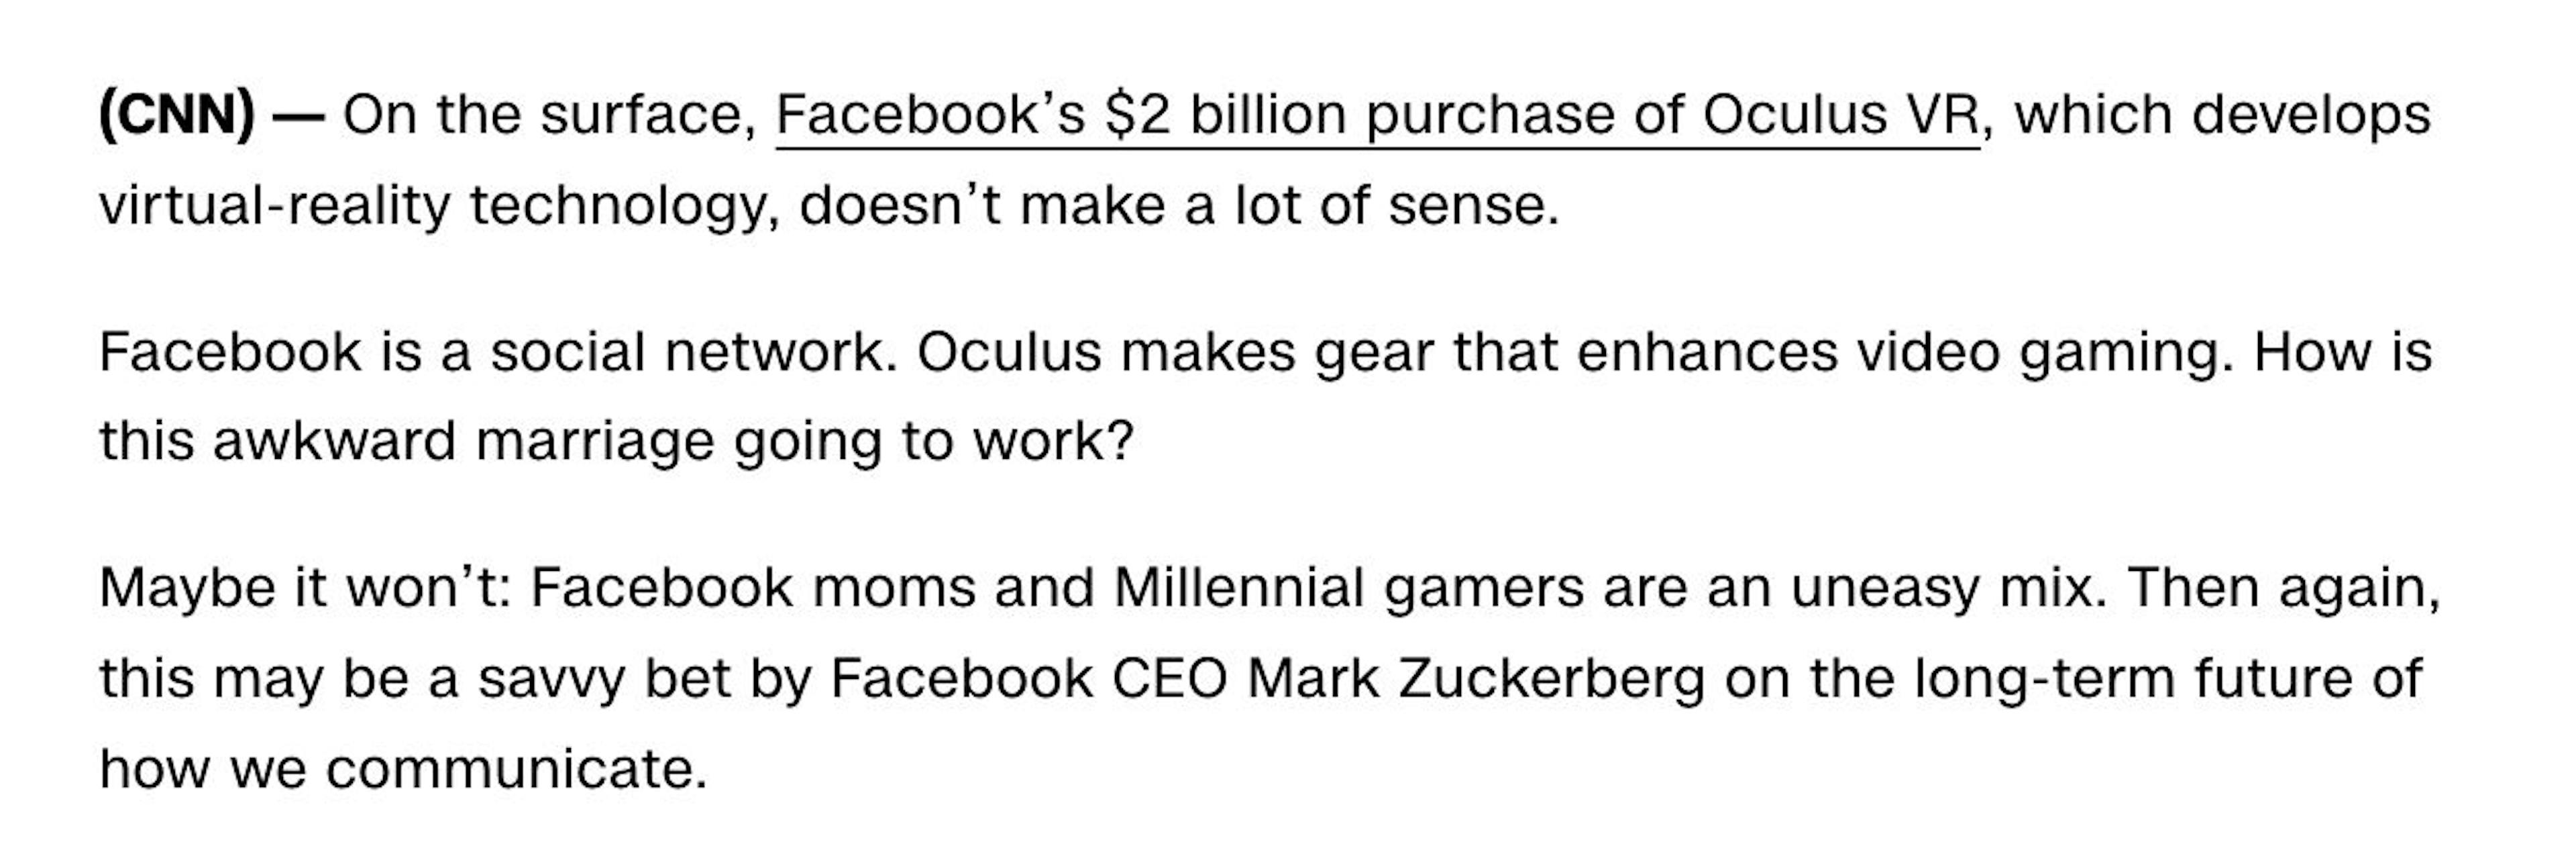 Aus „Was ist Oculus VR und warum hat Facebook 2 Milliarden US-Dollar dafür bezahlt?“ veröffentlicht am 26.03.2014